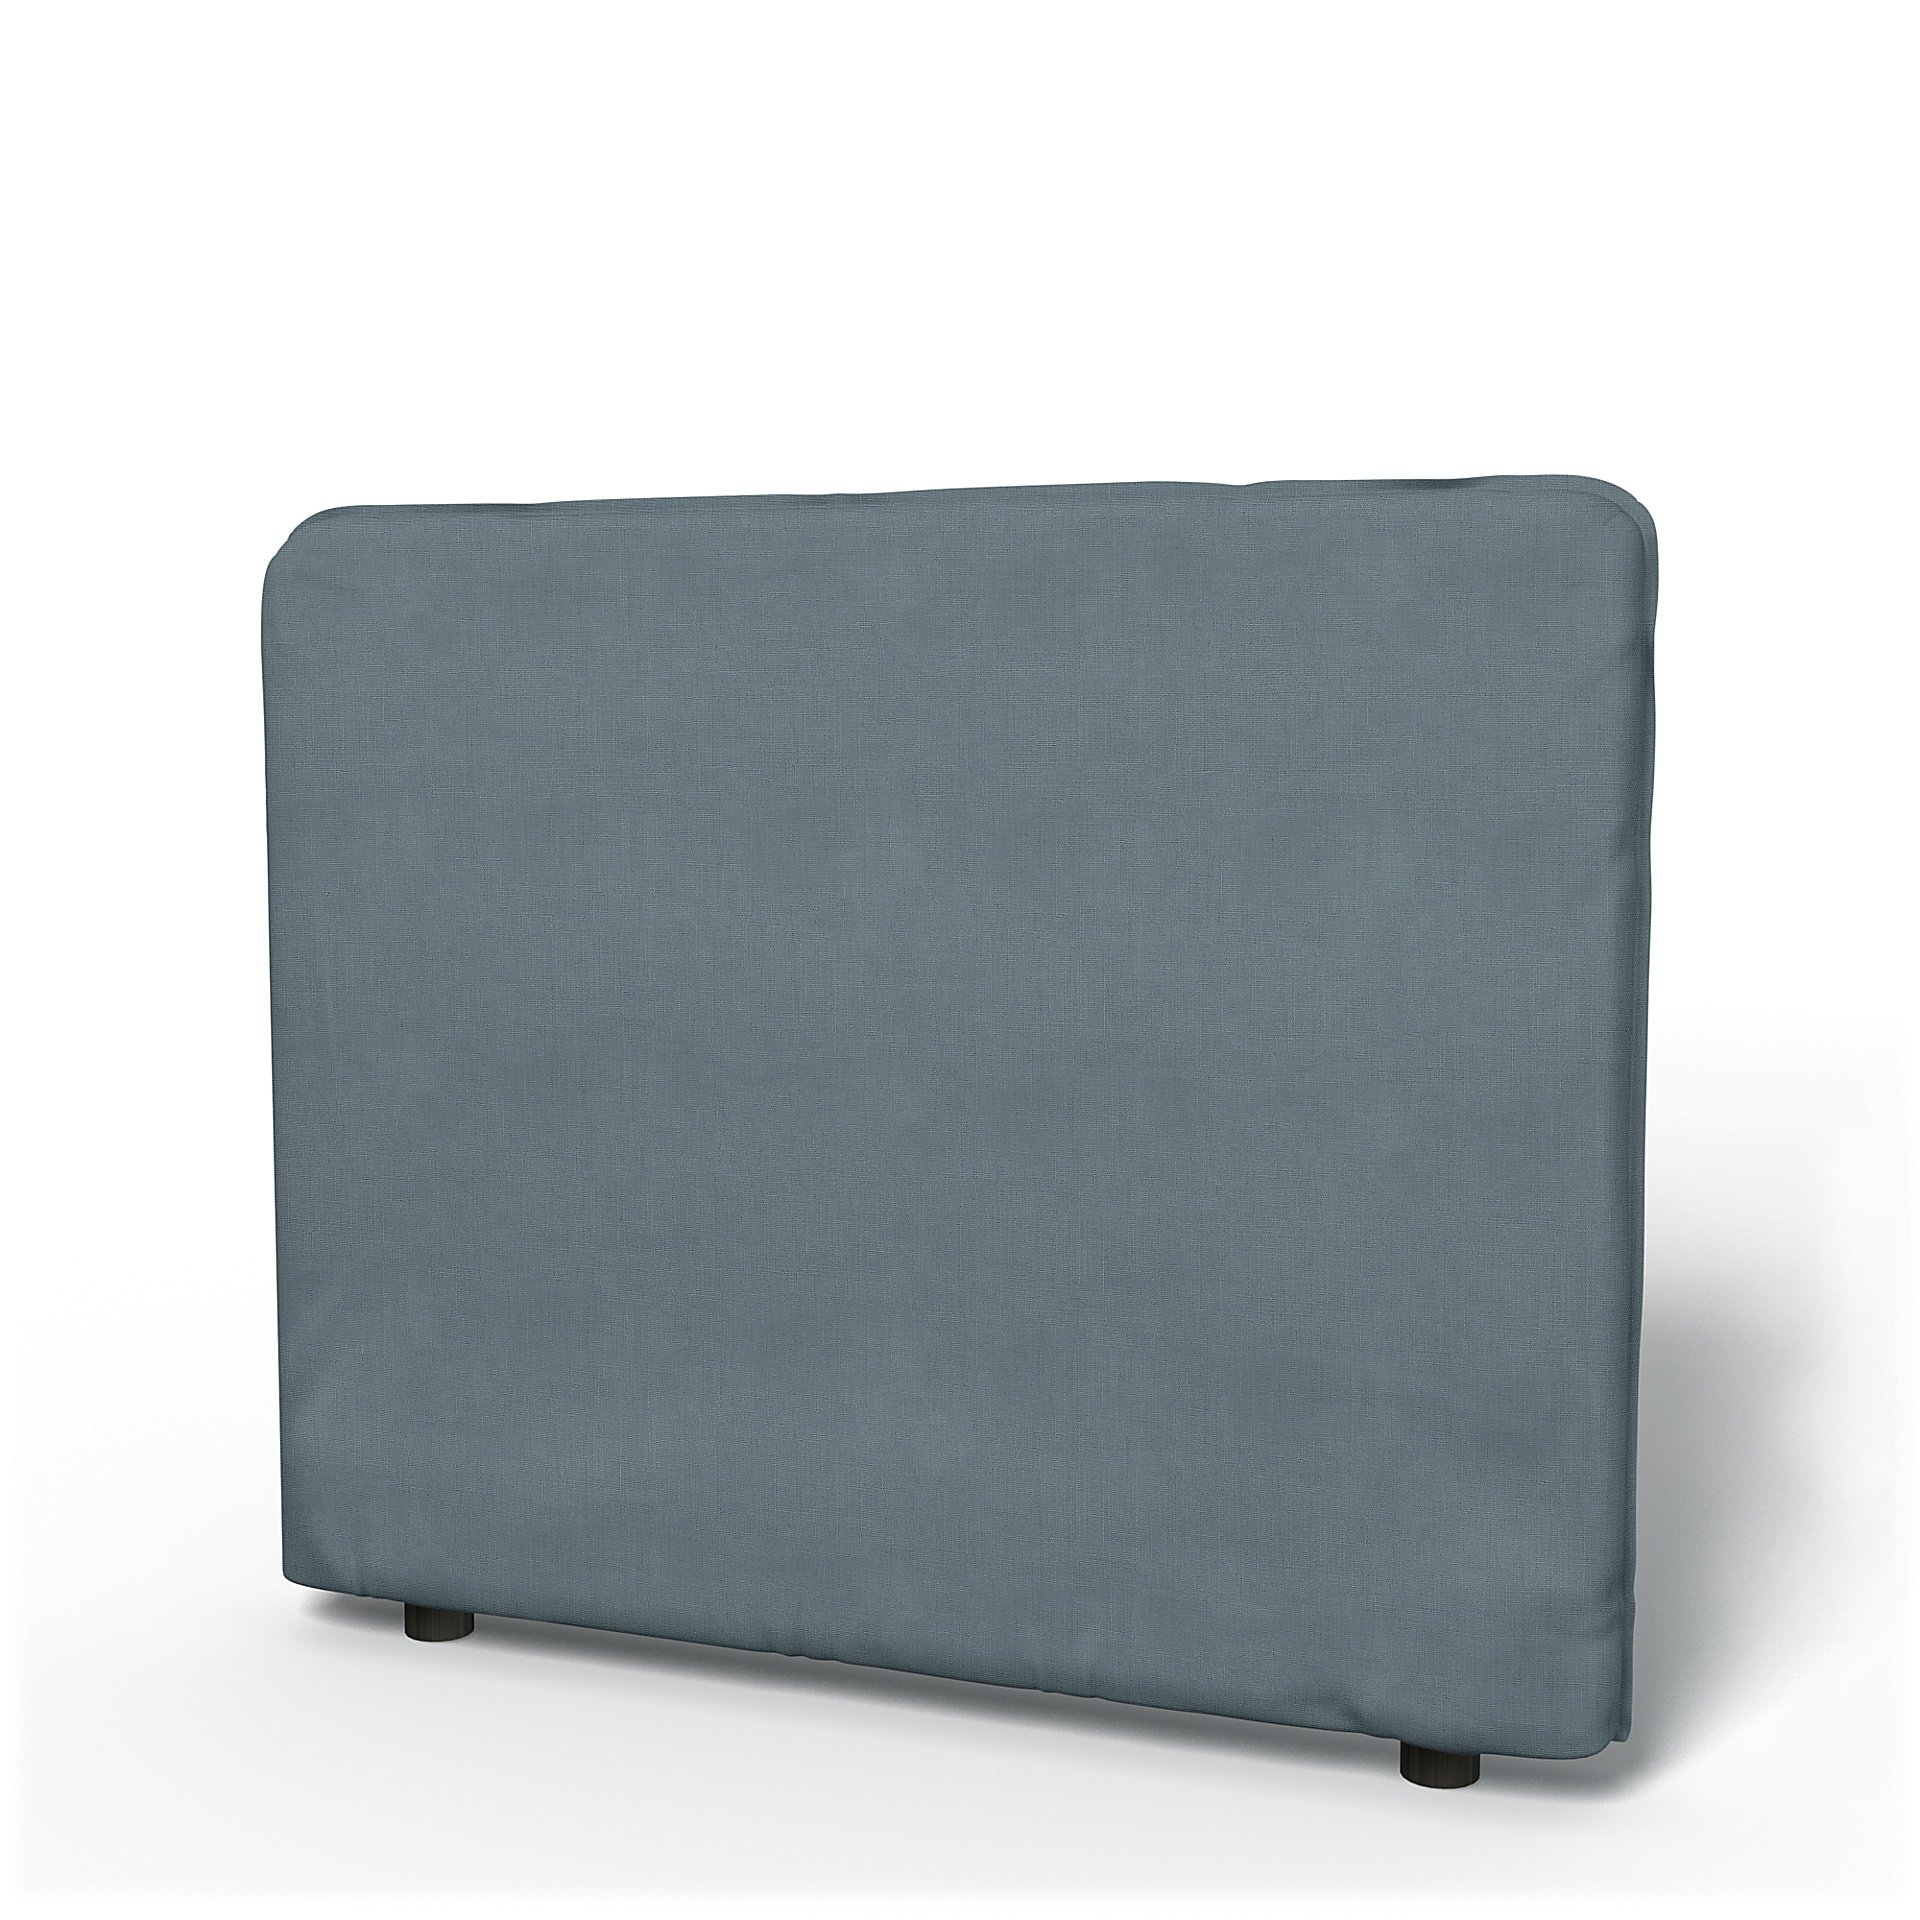 IKEA - Vallentuna Low Backrest Cover 100x80cm 39x32in, Dusk, Linen - Bemz